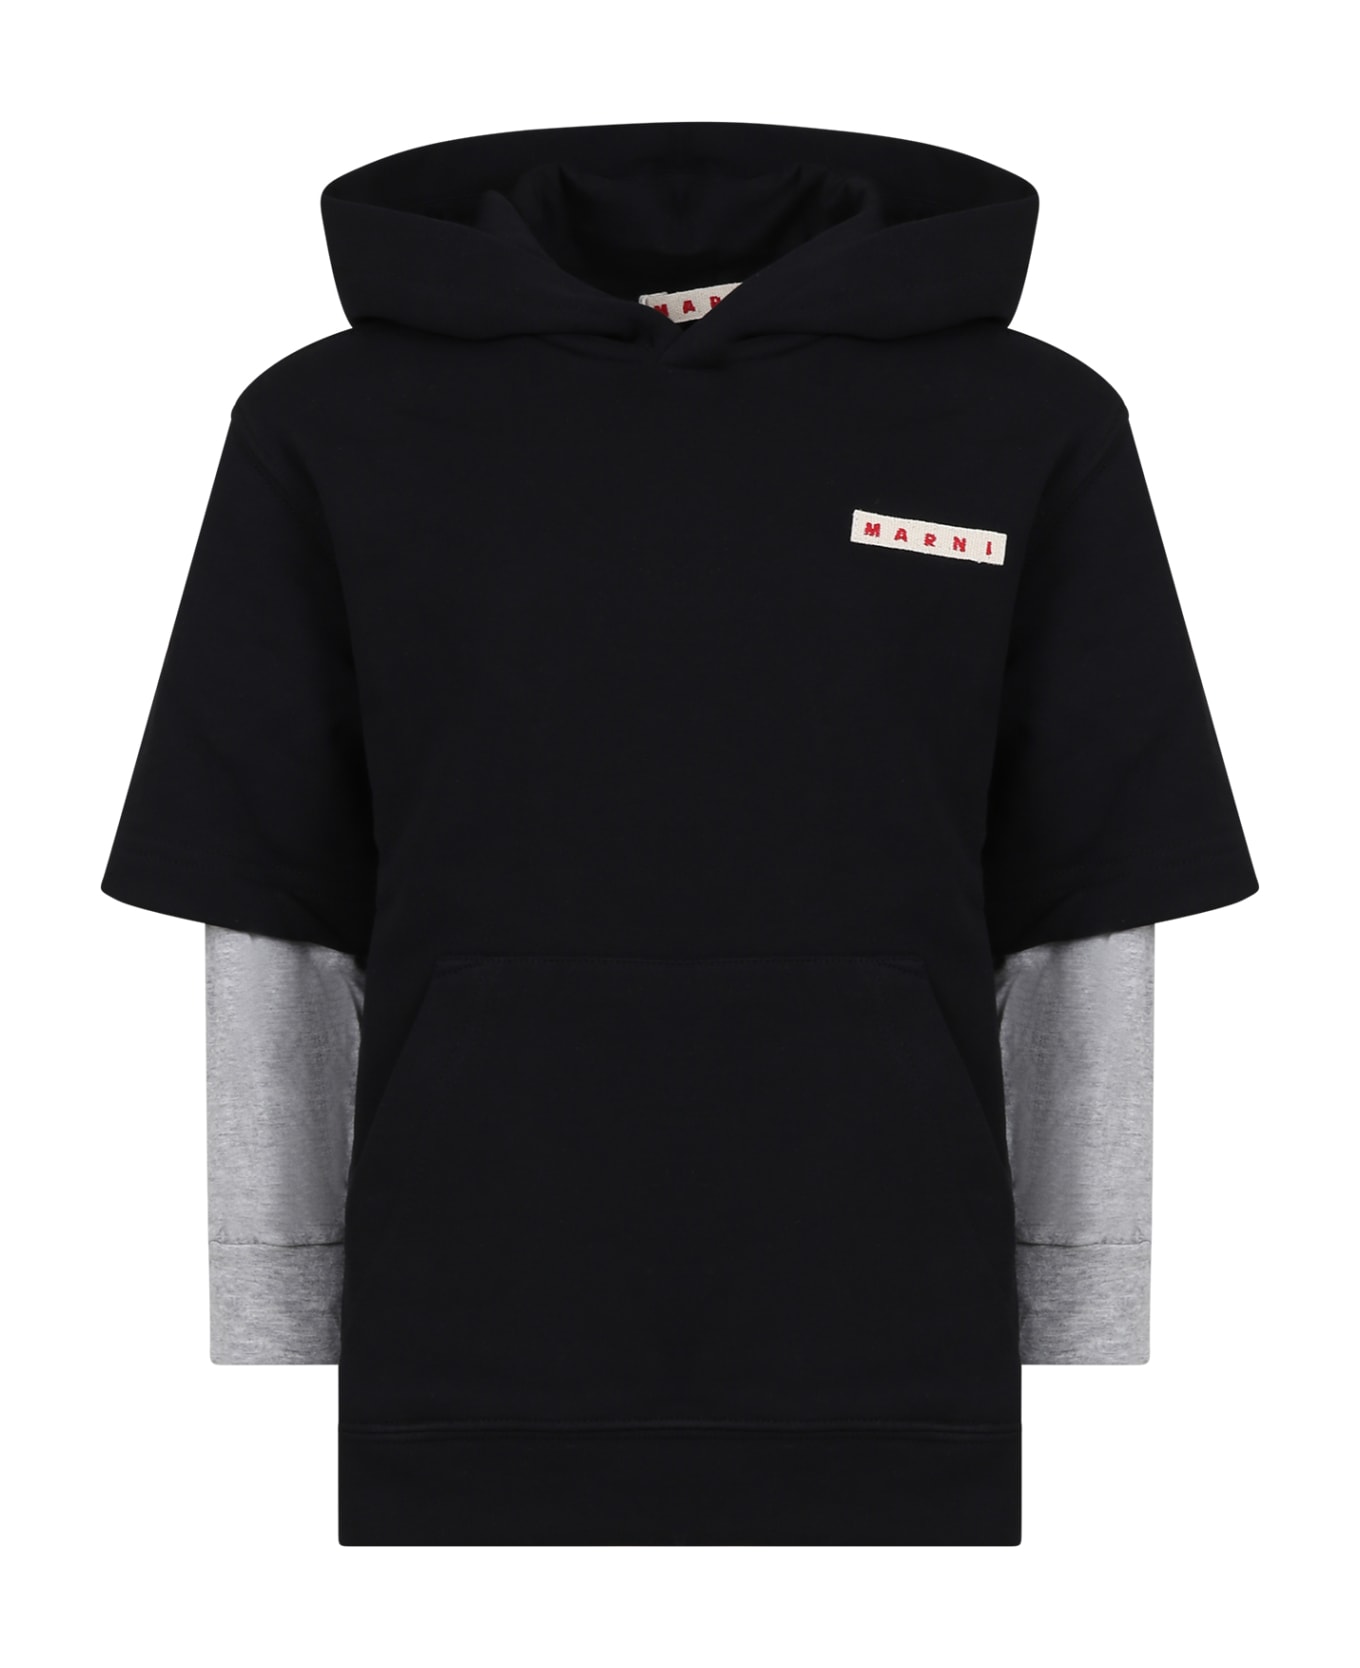 Marni Black Sweatshirt For Girl With Logo - Black ニットウェア＆スウェットシャツ